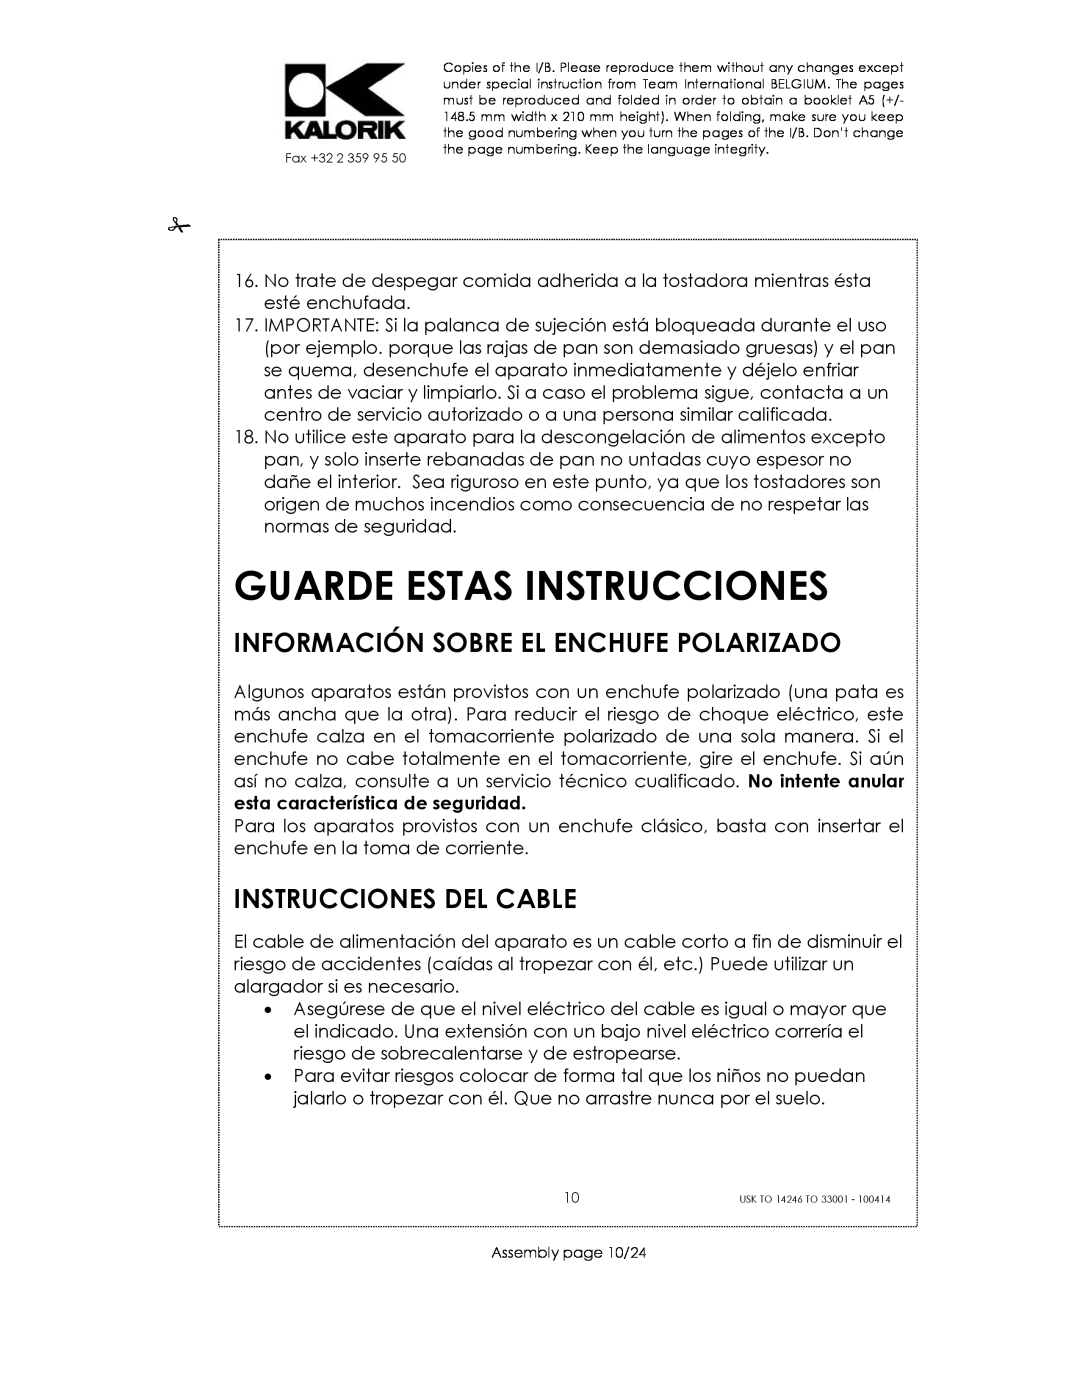 Kalorik 14246 - 33001 manual Guarde Estas Instrucciones, Información Sobre El Enchufe Polarizado, Instrucciones Del Cable 